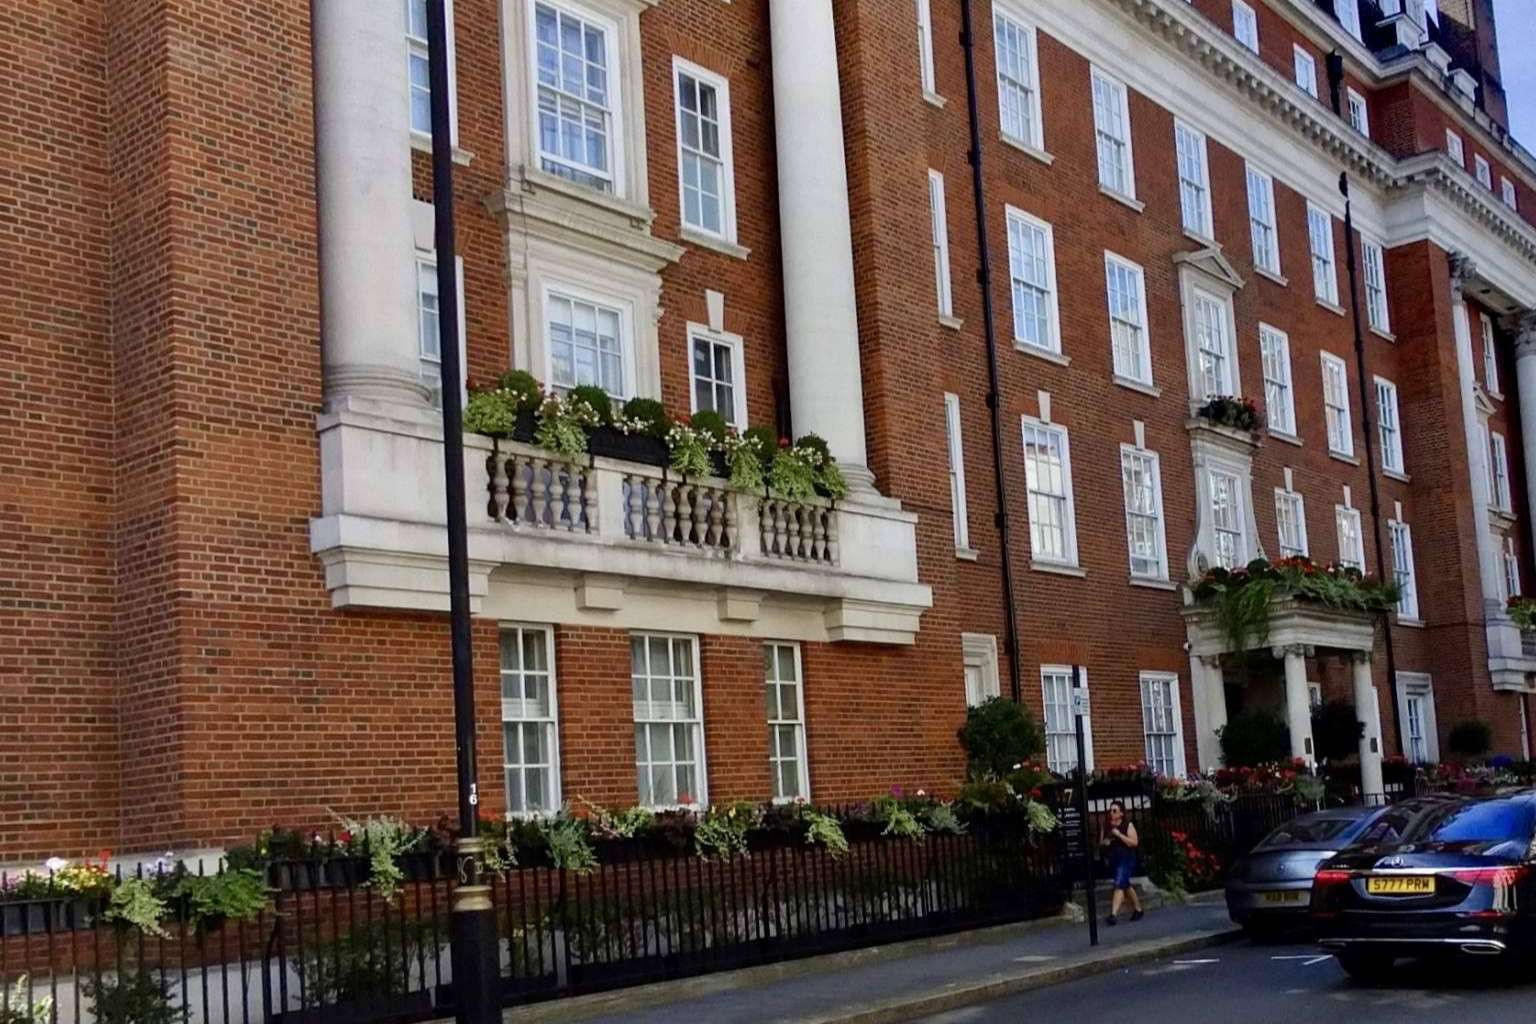  Residencias de lujo en el barrio de Mayfair, Londres, con EI2VALUE 